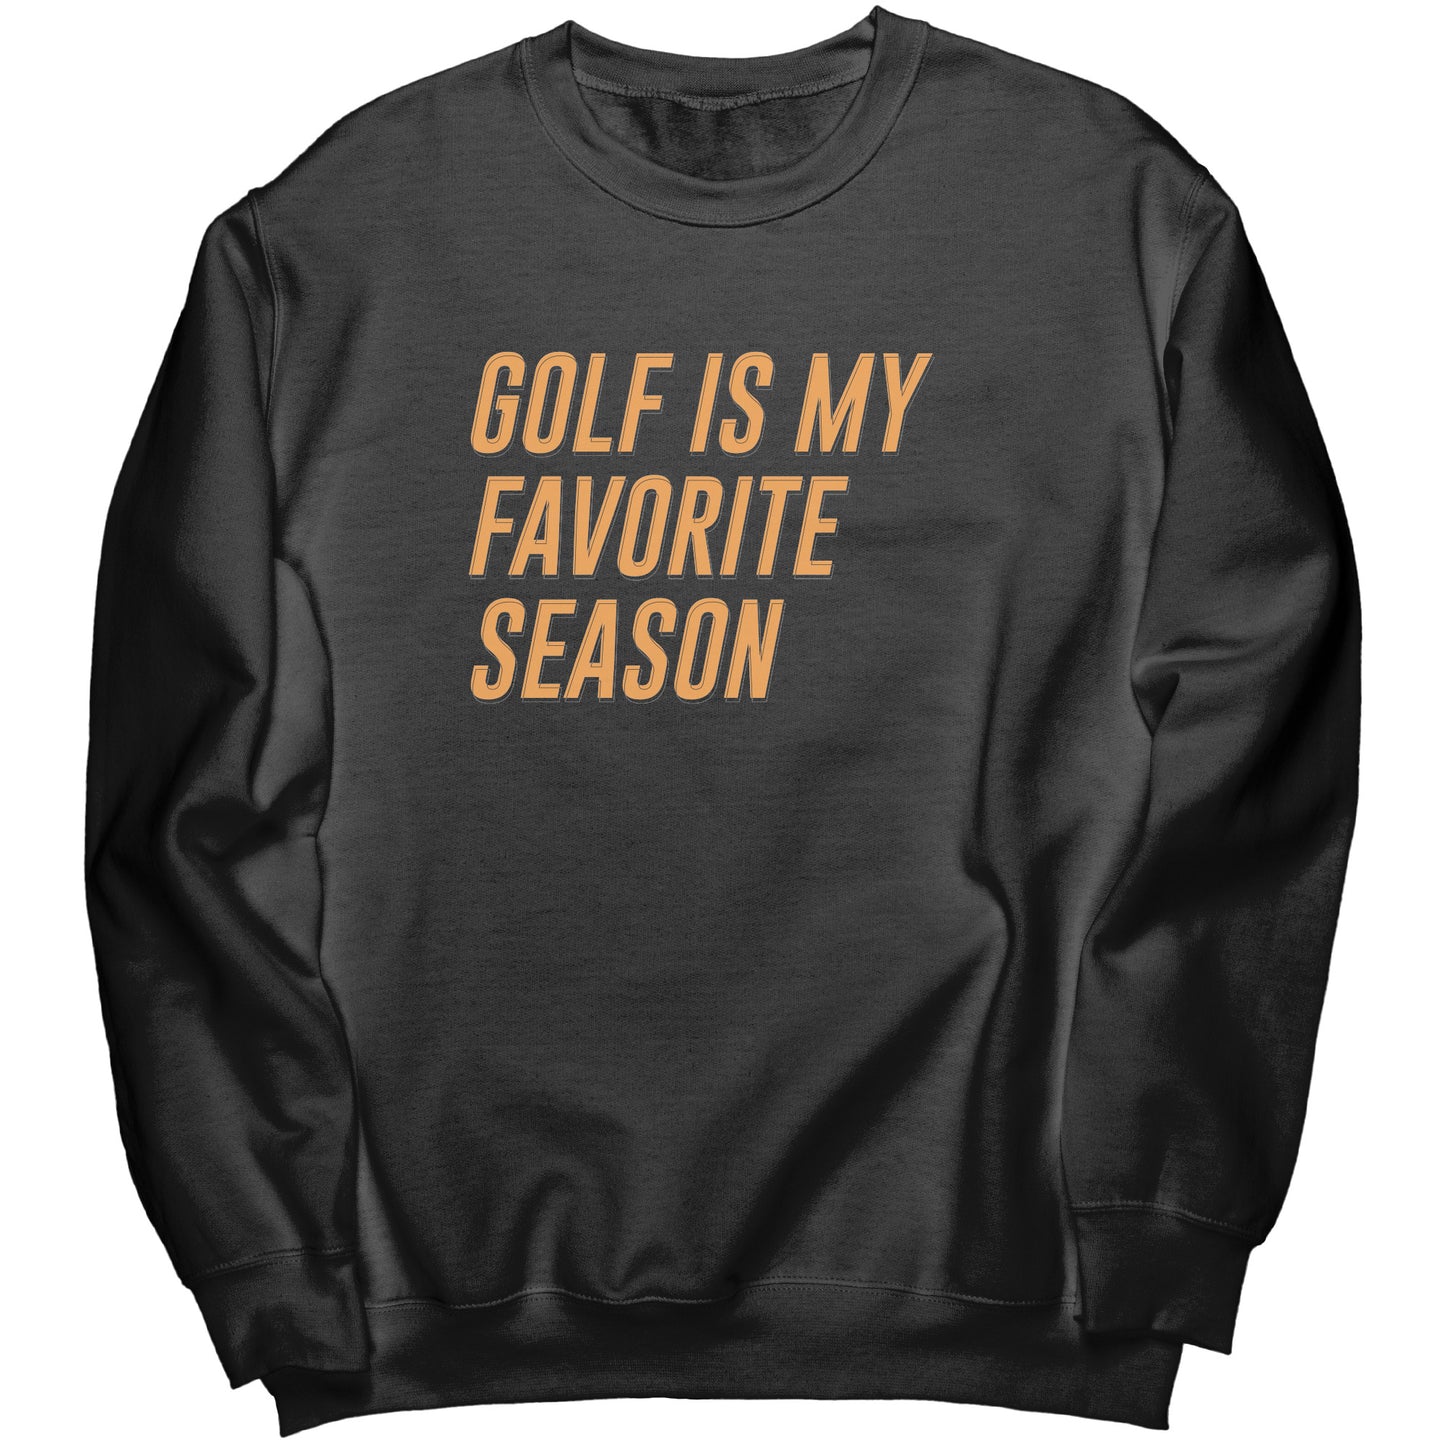 "Golf is my Favorite Season" Sweatshirt